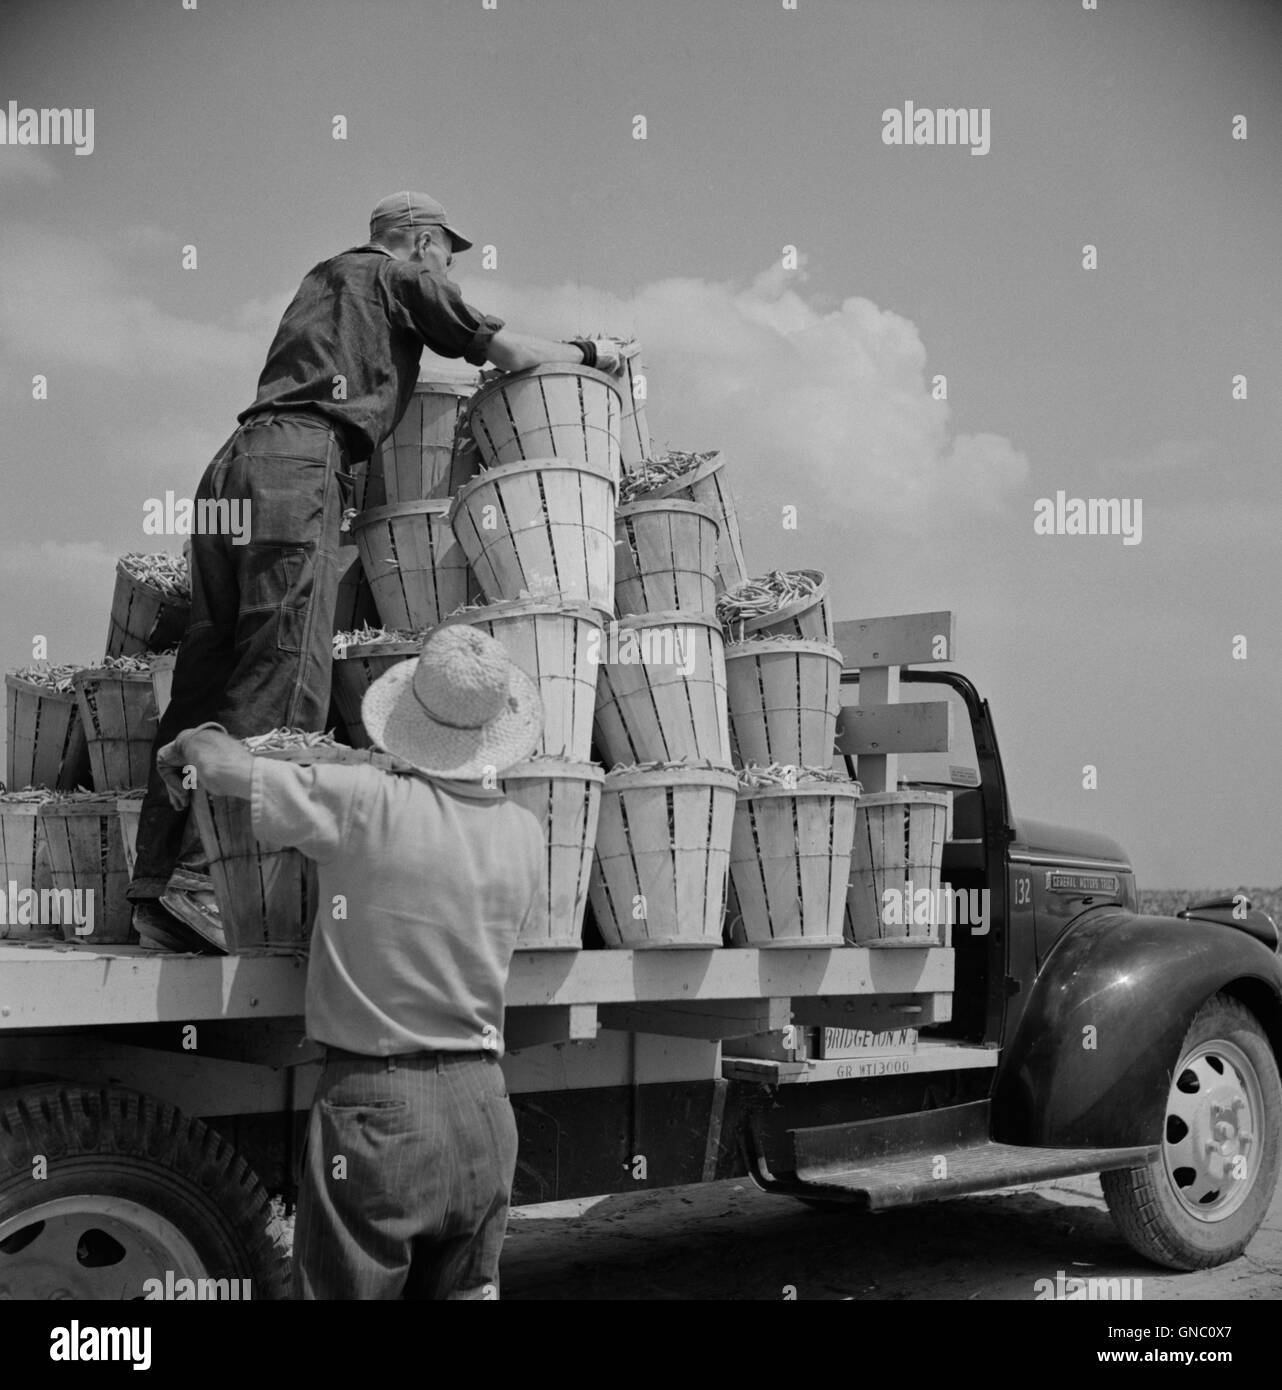 LKW wird mit Bushels voller Bohnen beladen, von 2 Day Workers, Rear View, Seabrook Farms, Bridgeton, New Jersey, USA, Marion Post Wolcott, USA Farm Security Administration, Juli 1941 Stockfoto